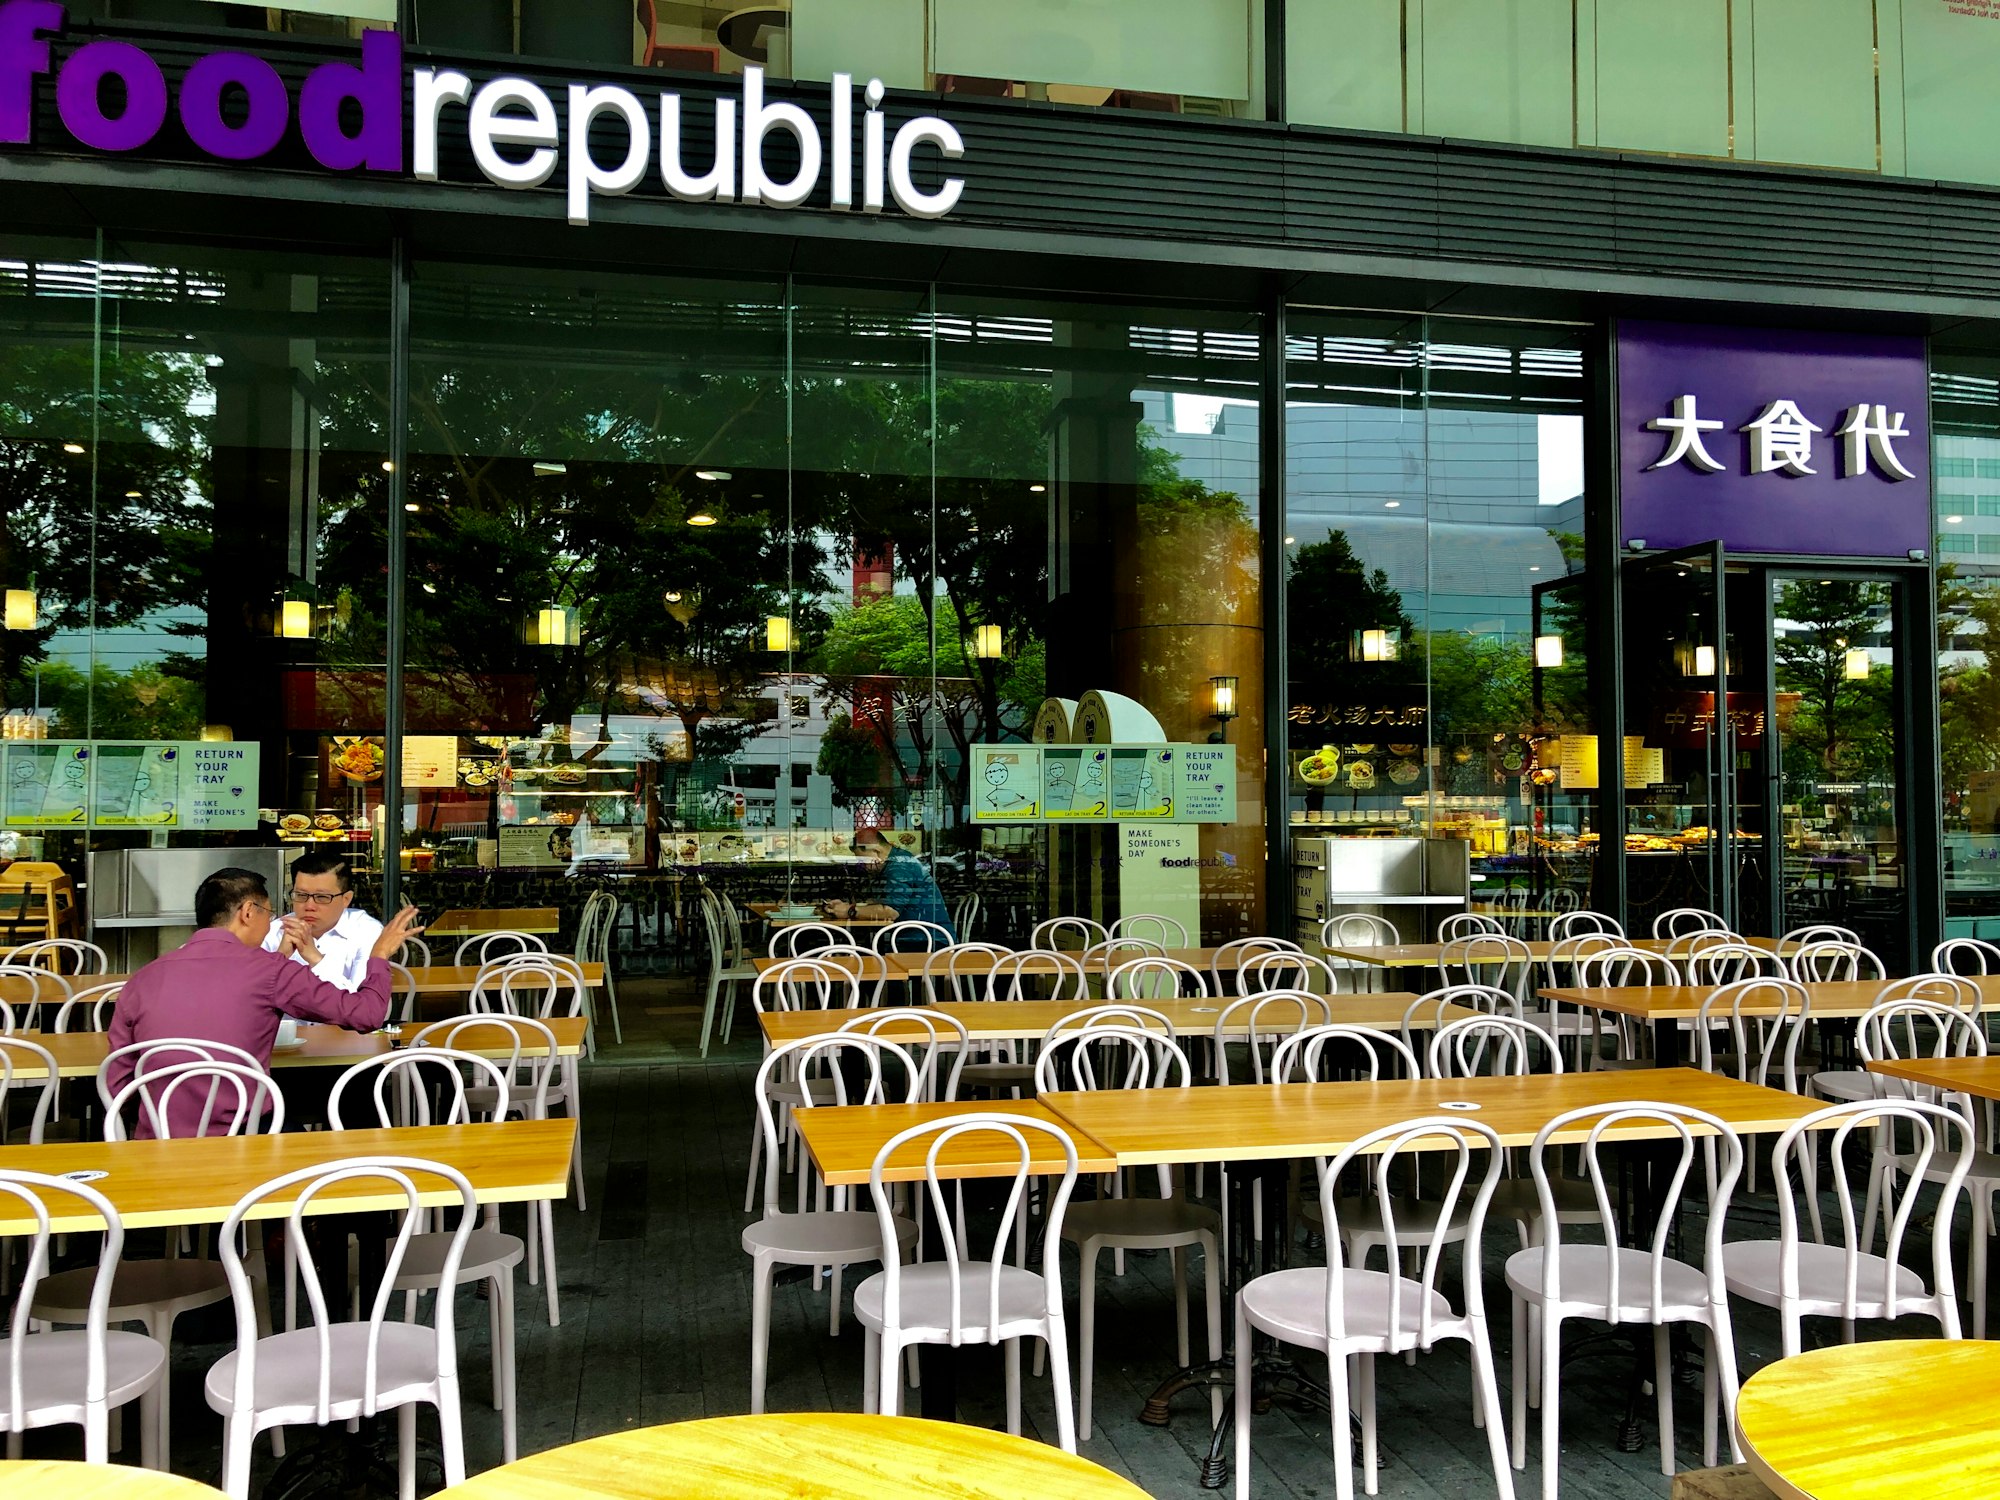 Food Republic Hawker Centre